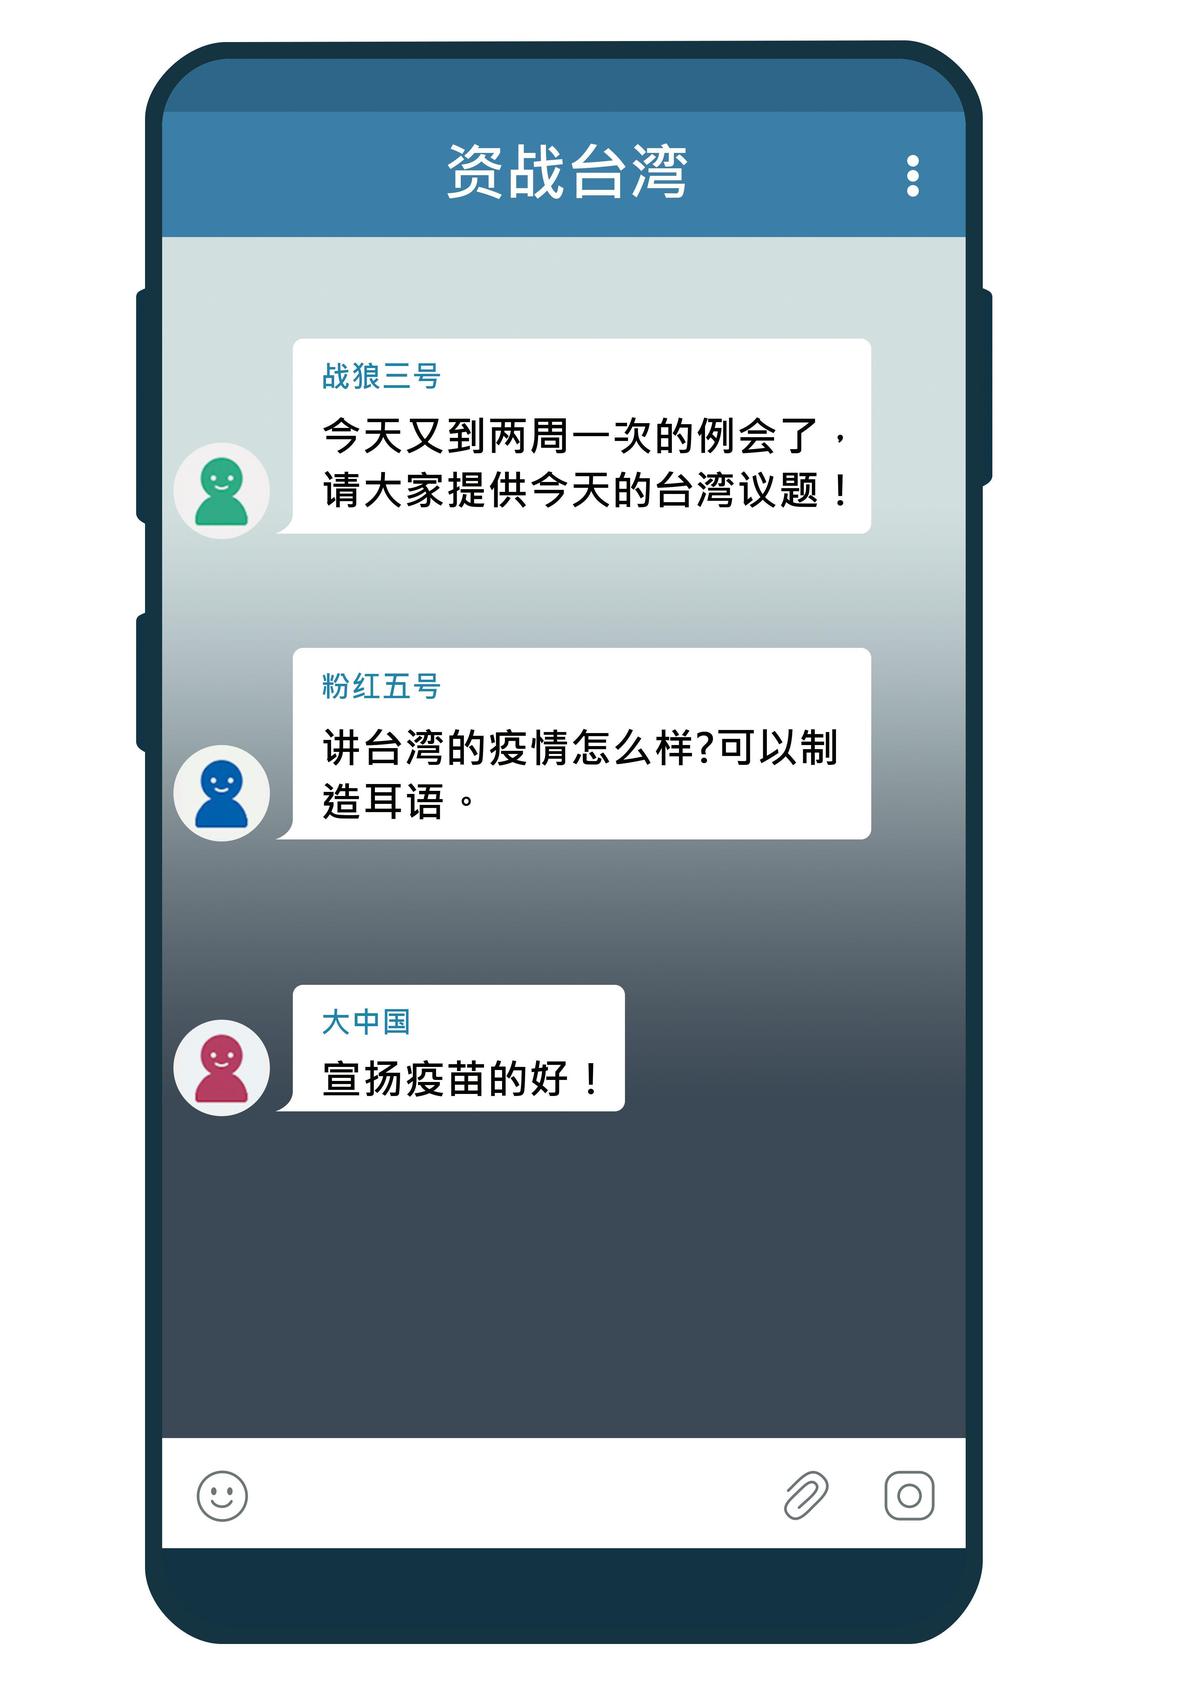 情治單位掌握，中國網軍及側翼用加密的Telegram群組操盤散布假訊息。（示意畫面）